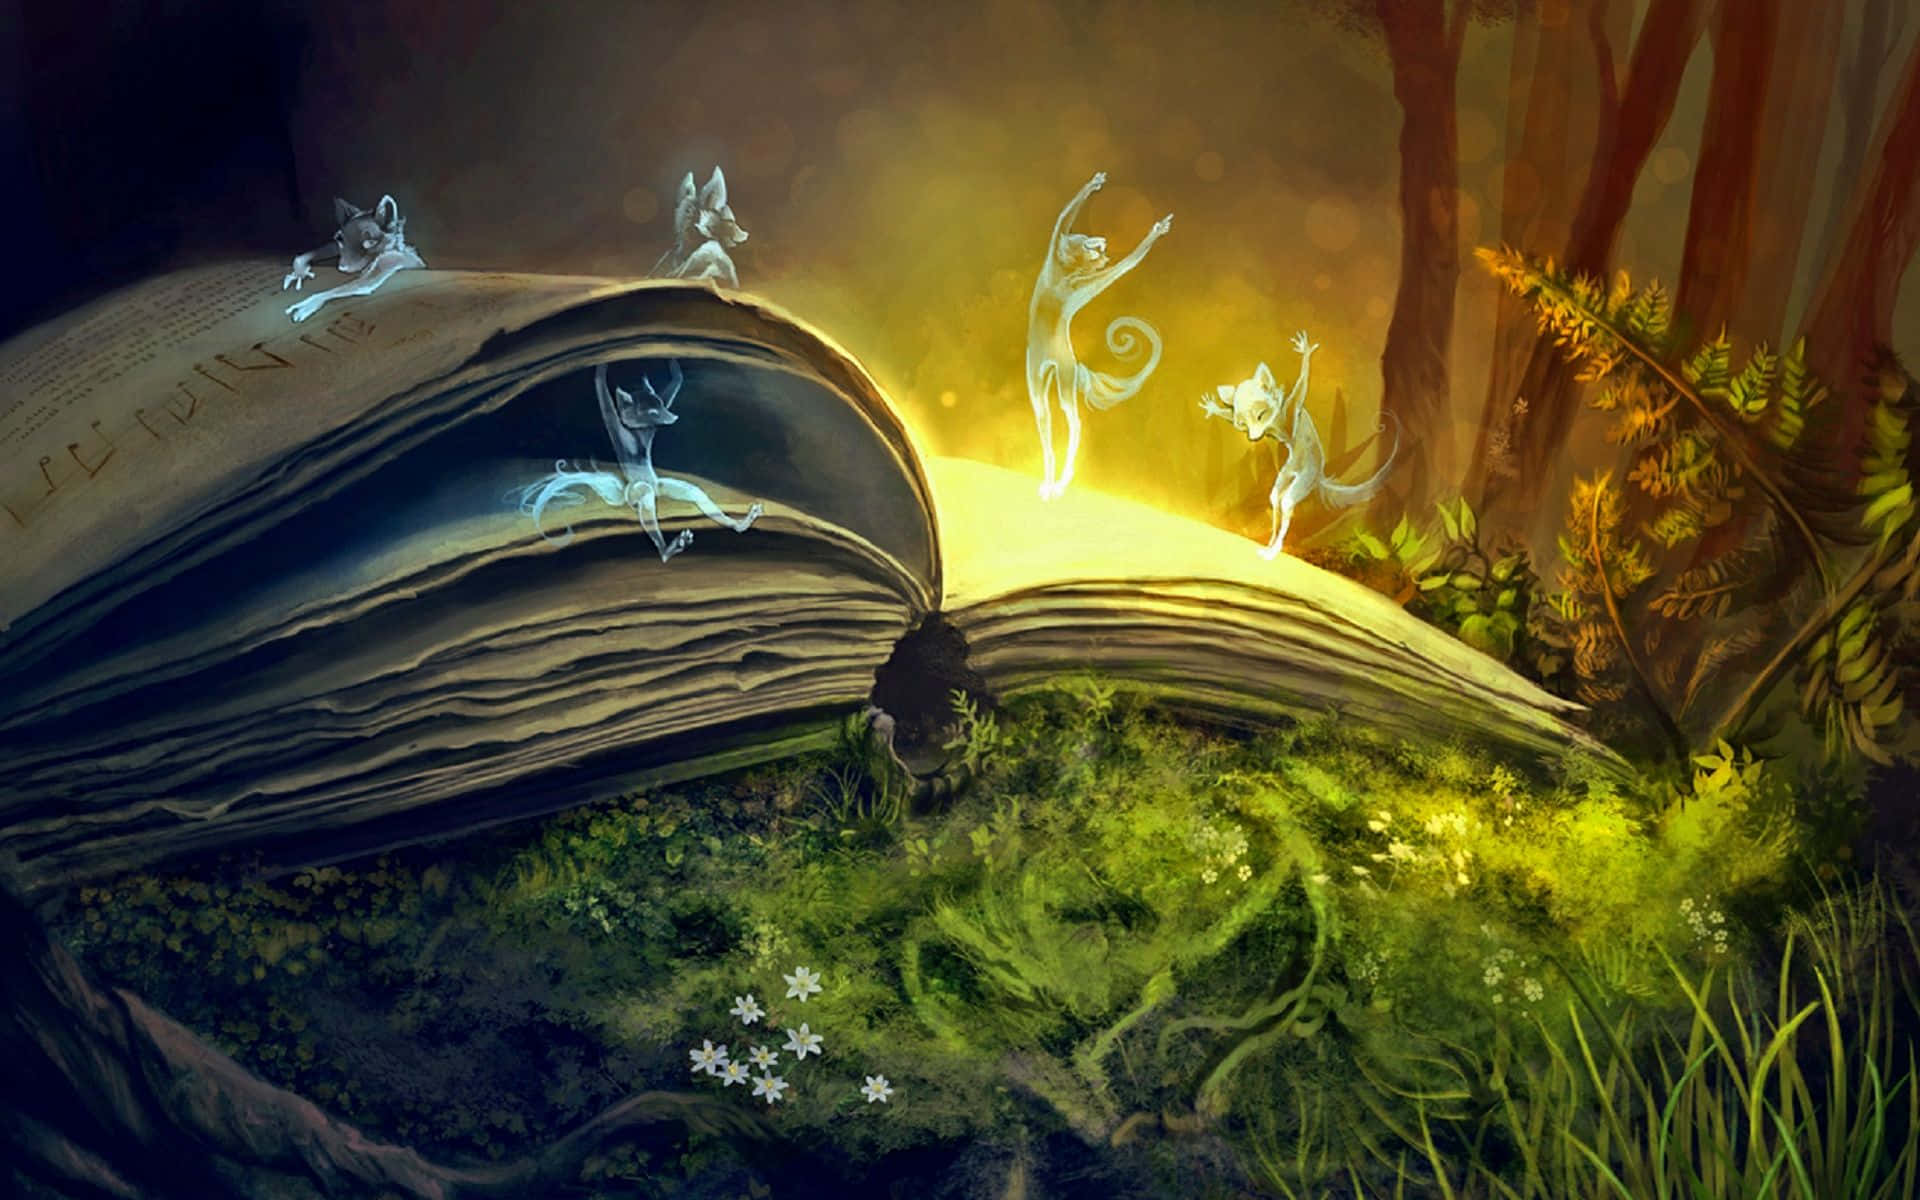 Explore your imagination through books